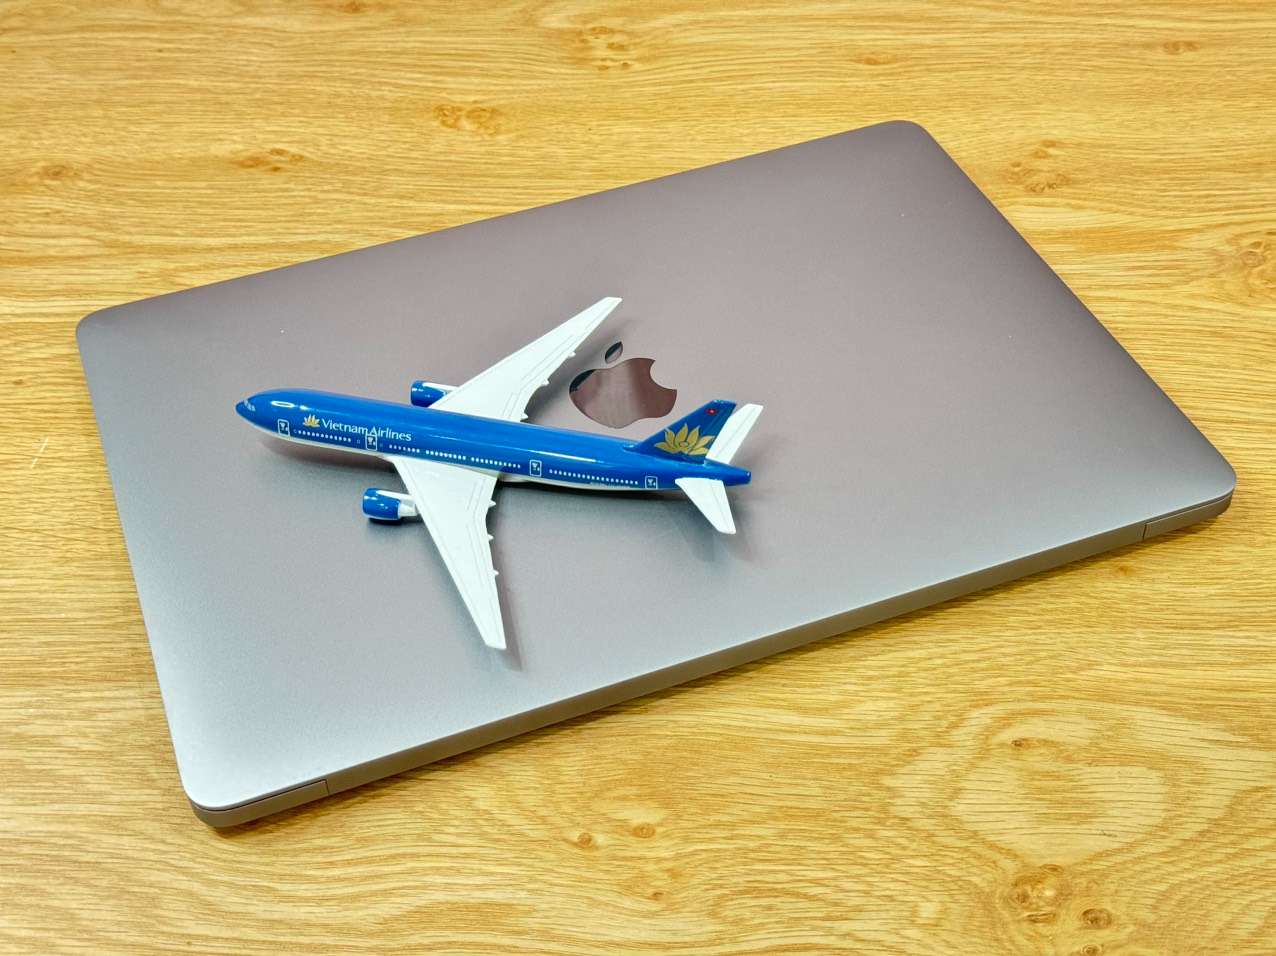 Macbook-air-2019-core-i5-ram-16gb-ssd-256gb-laptop-doanh-nhan-laptopthienan